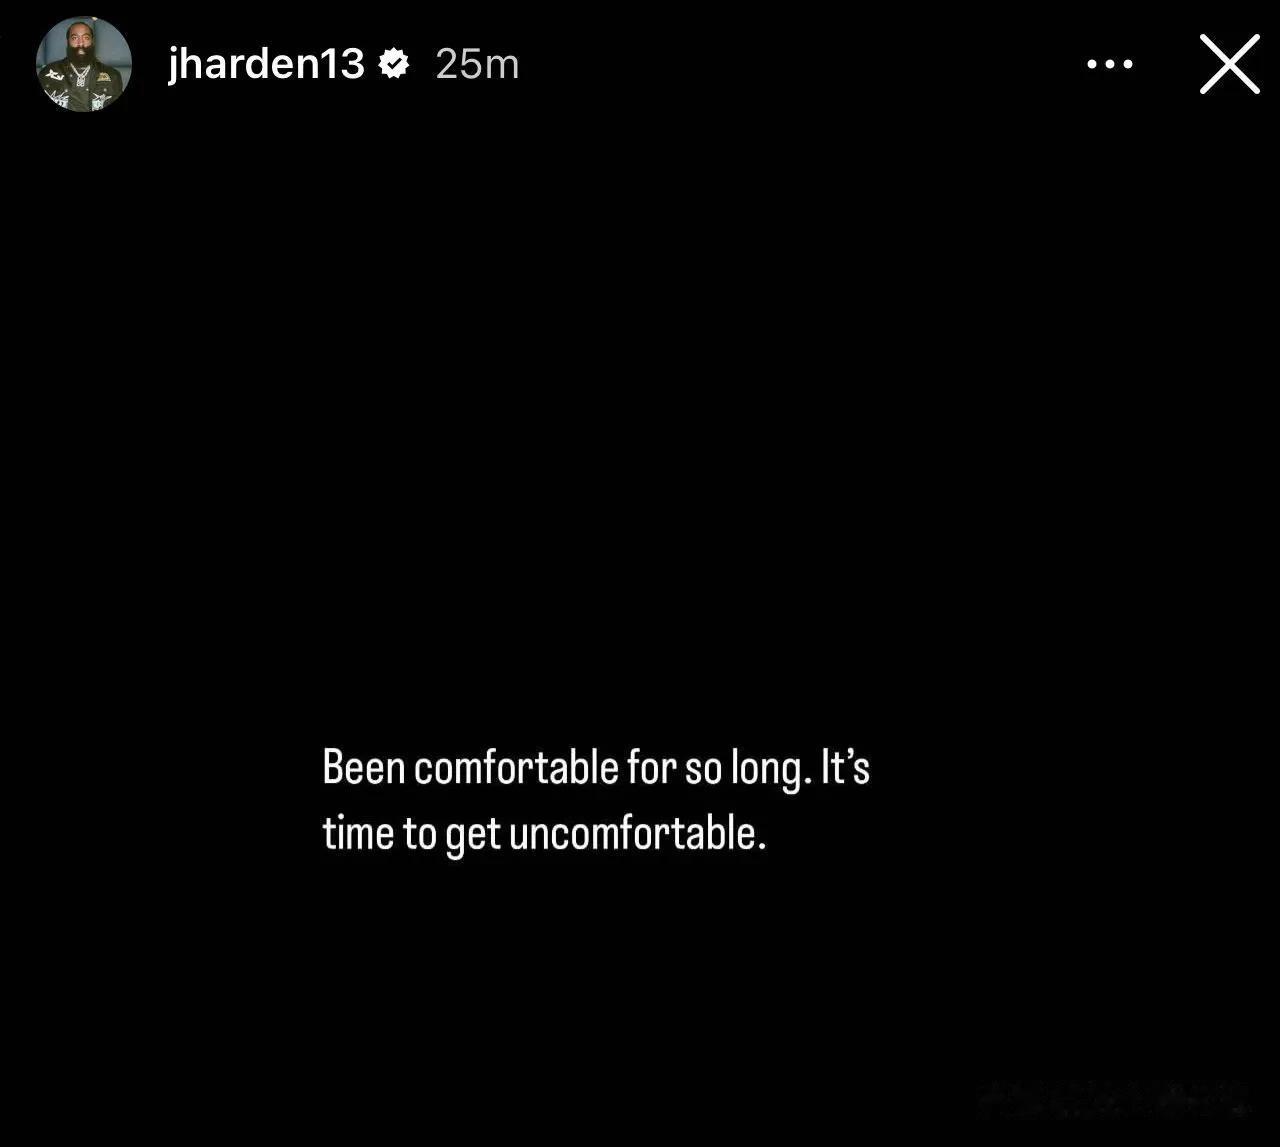 “舒服太久了，是时候不舒服了”
詹姆斯哈登想要跳出他的舒适圈
哈登在IG上发布了